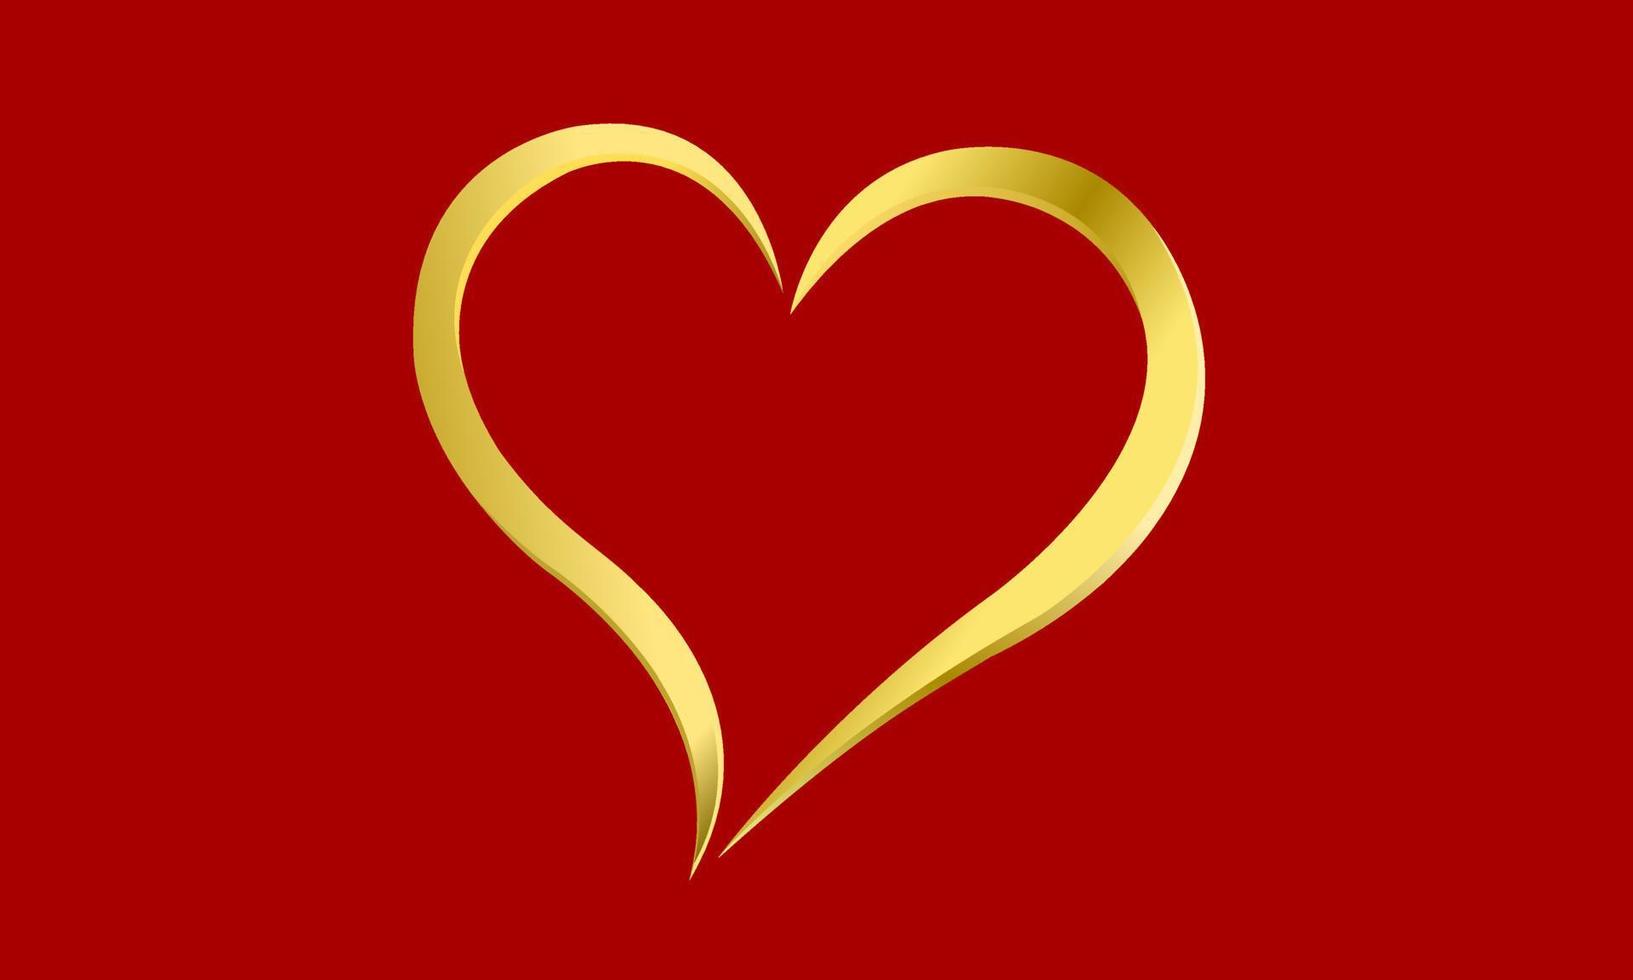 Symbol oder Logo glänzendes goldenes Herz. die Abbildung zeigt kostbare Liebe. vektor